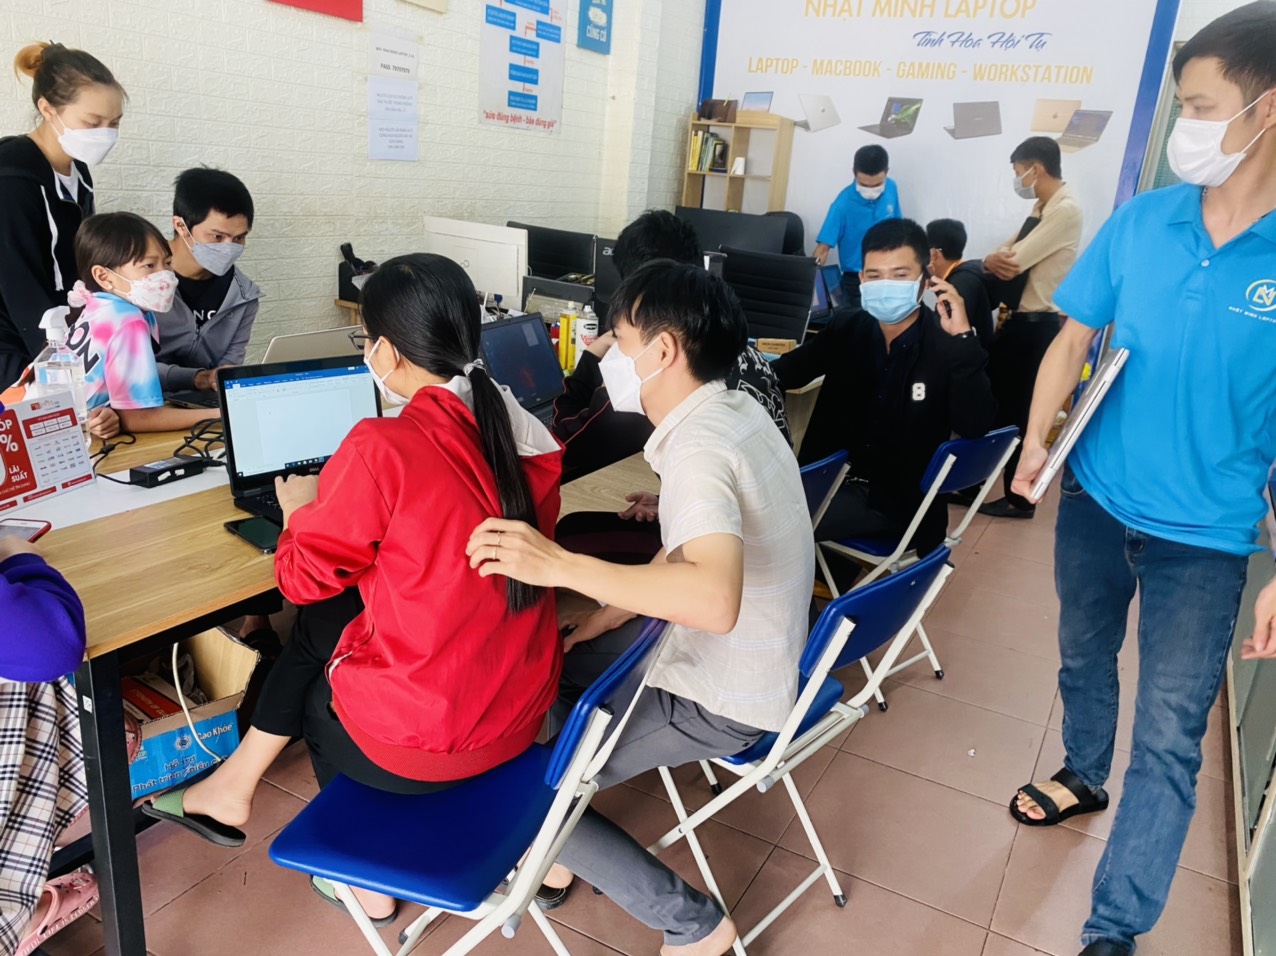 Thế mạnh của Nhật Minh Laptop